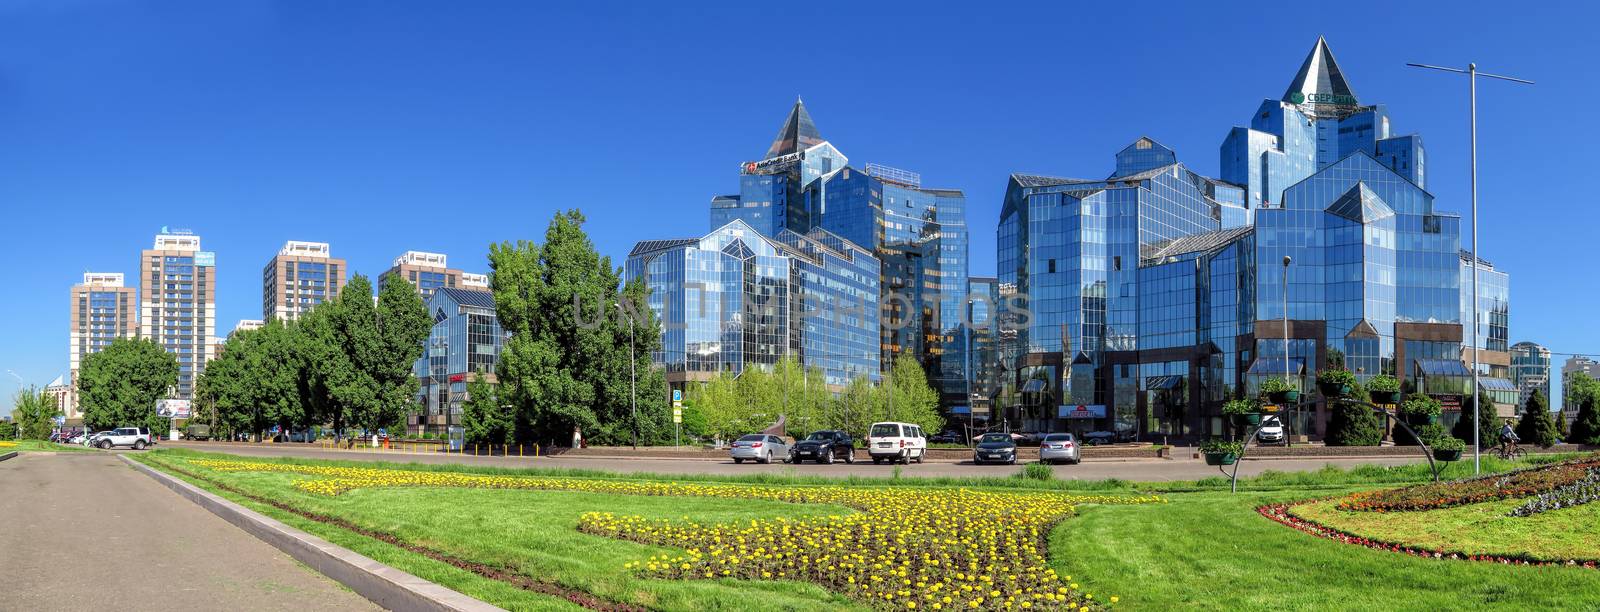 Almaty - Business Center Nurly Tau - Panorama by Venakr